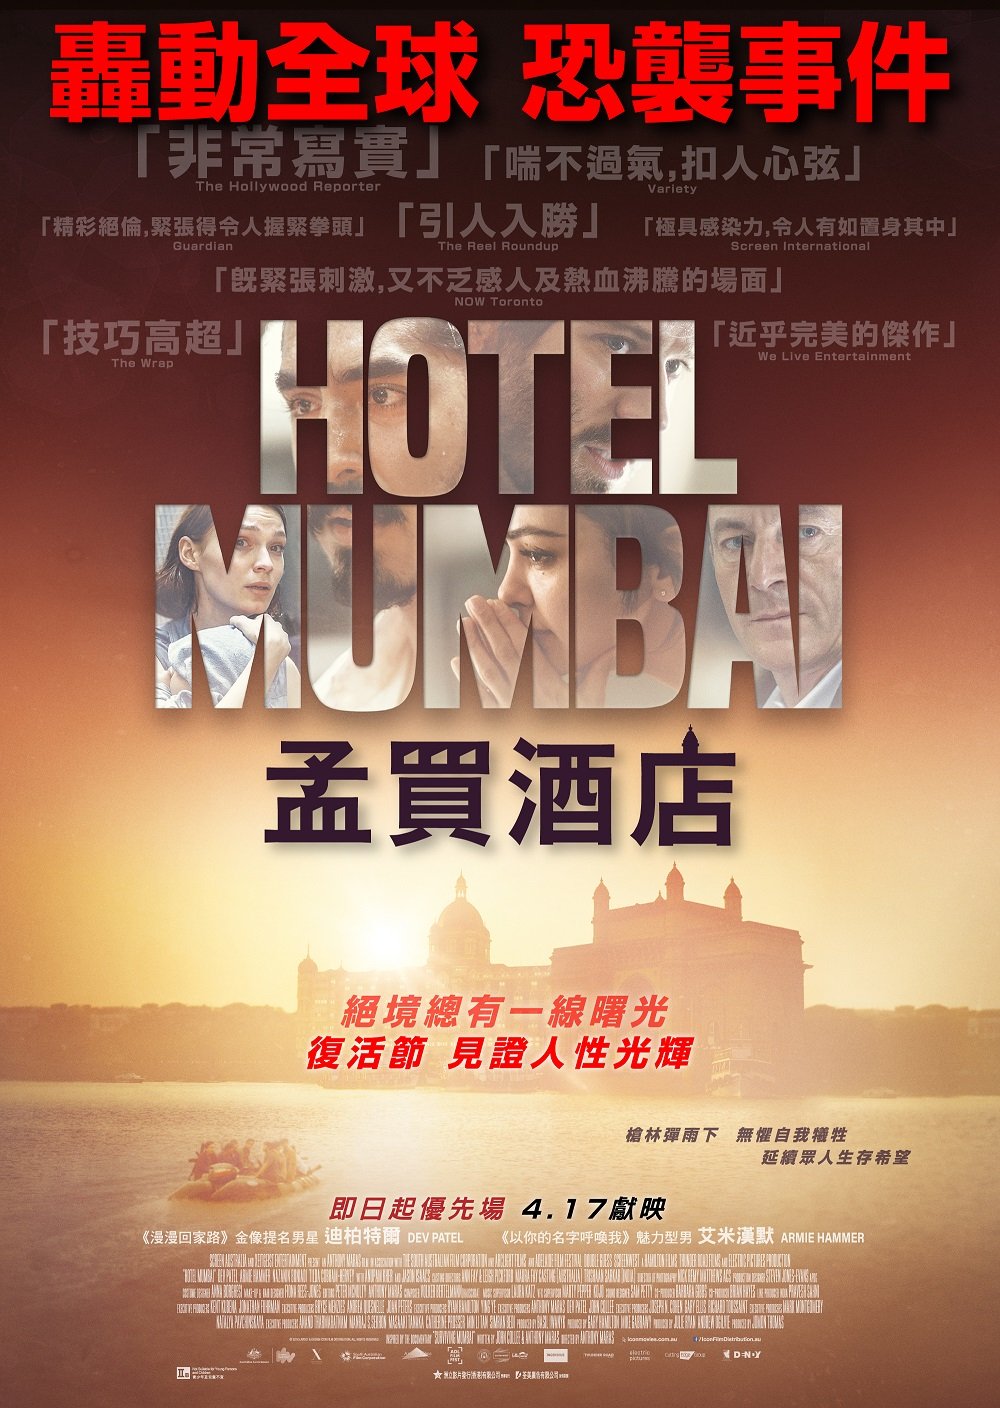 孟買酒店電影圖片 - Hotel-Mumbai-Poster-17Apr_compressed_1554107557.jpg